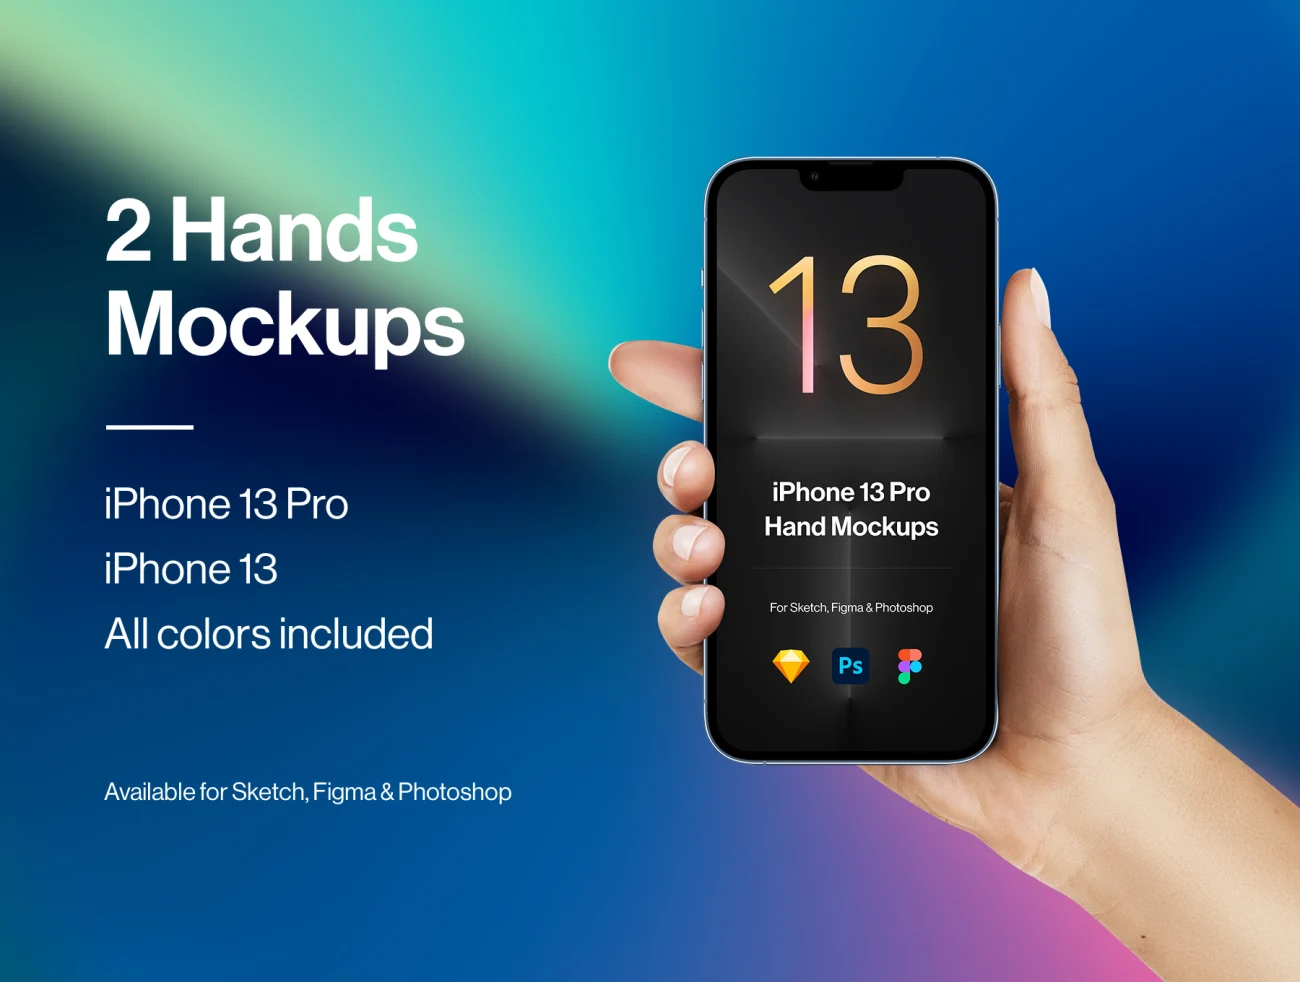 苹果手机iPhone 13手机智能样机分层素材 2 Hands Mockups iPhone 13 Pro & iPhone 13-产品展示、实景样机、手机模型、样机、苹果设备-到位啦UI